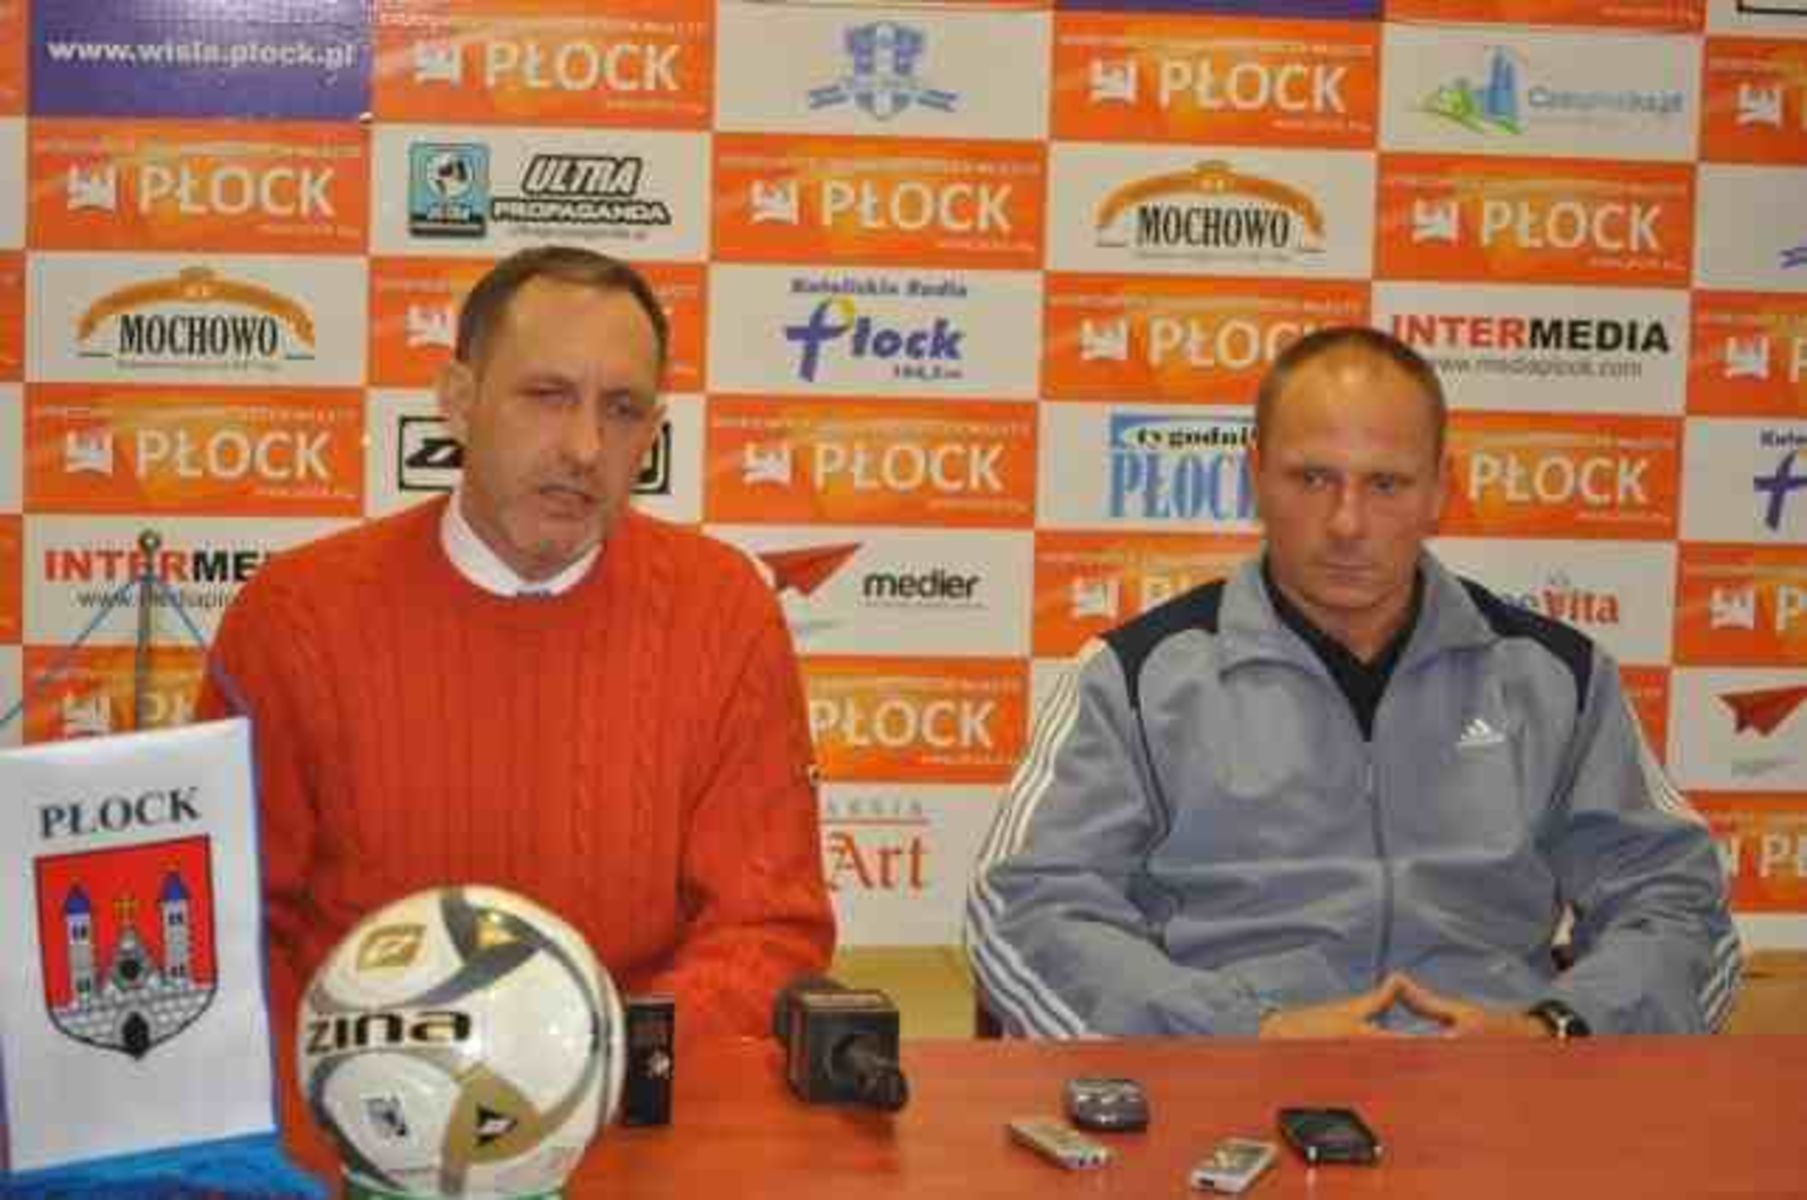 Libor Pala i Szymon Szałachowski podczas konferencji po meczu w Płocku. Fot. wisla.plock.pl